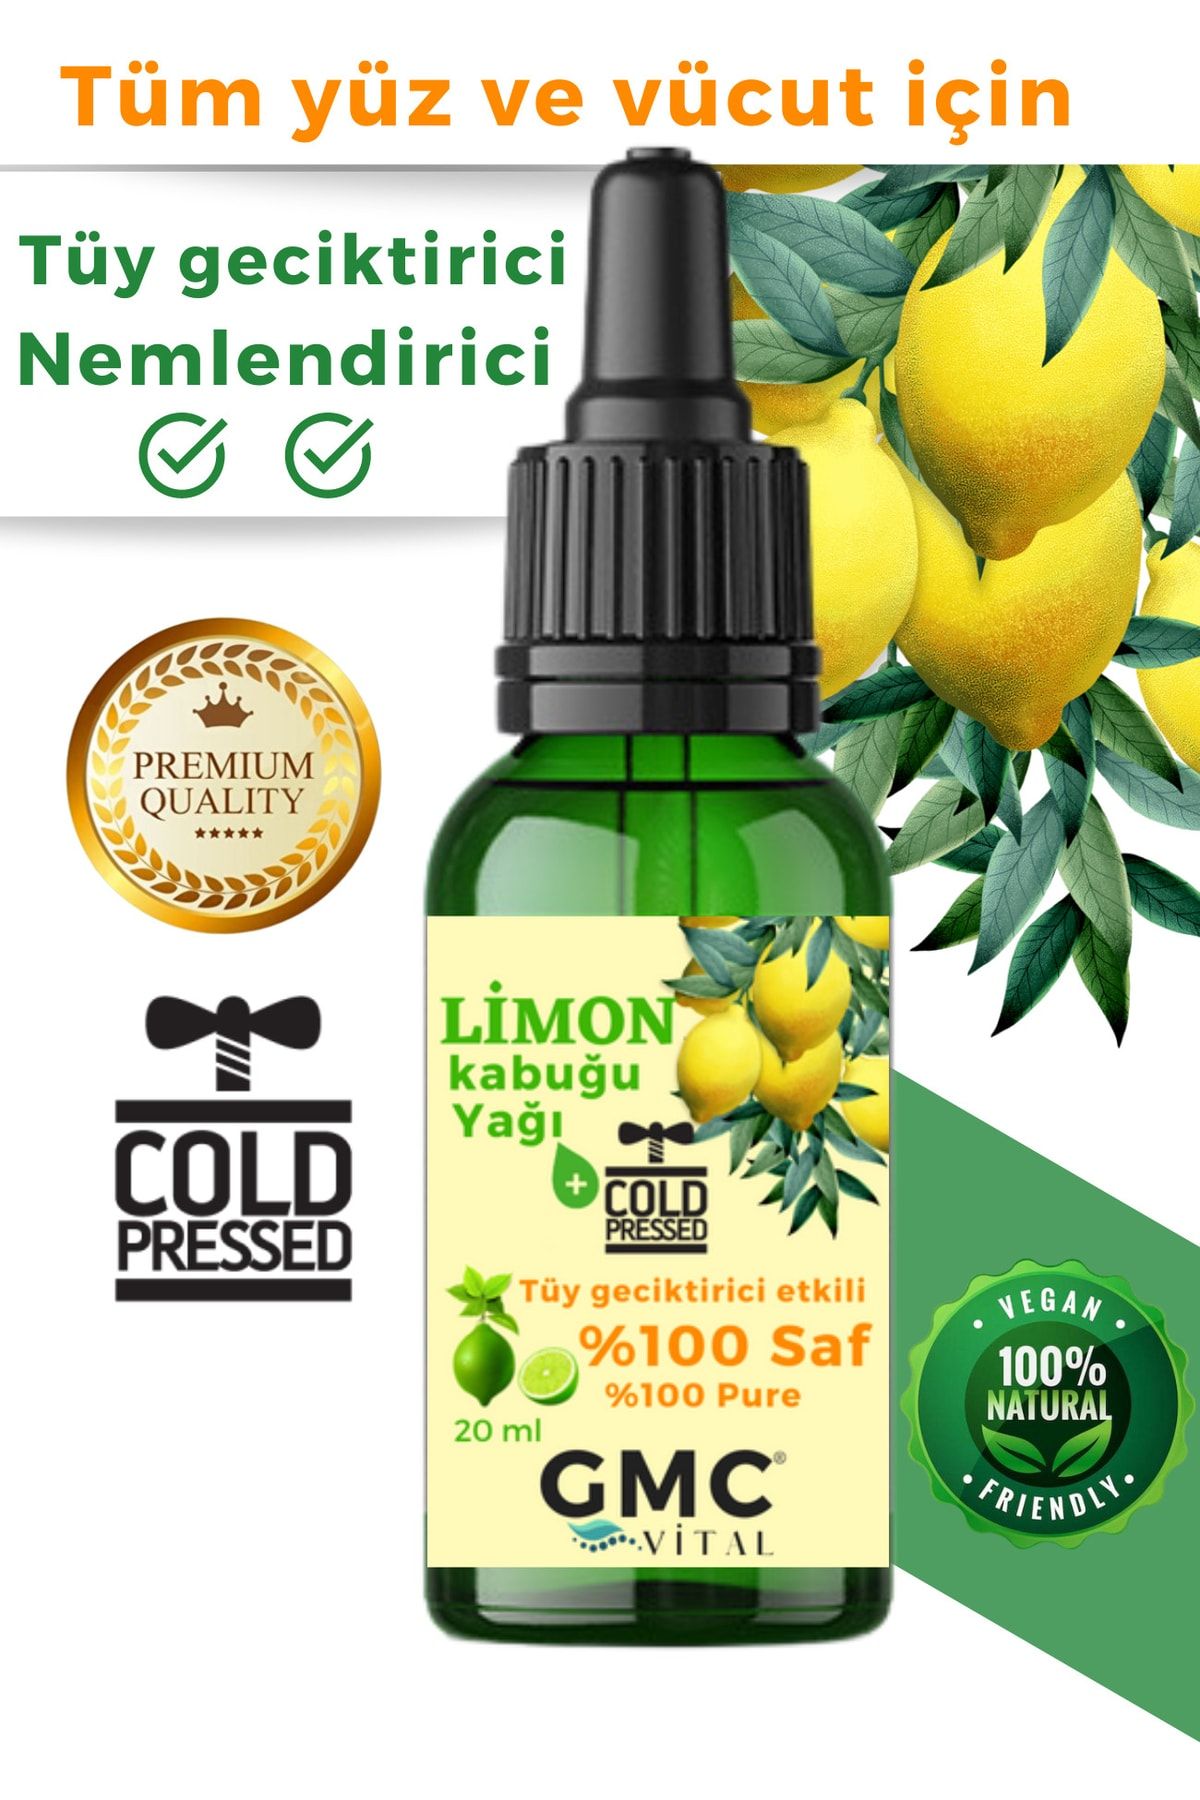 Gmc vital %100 Saf Limon Kabuğu Yağı Tüy Tüy Azaltıcı Serum